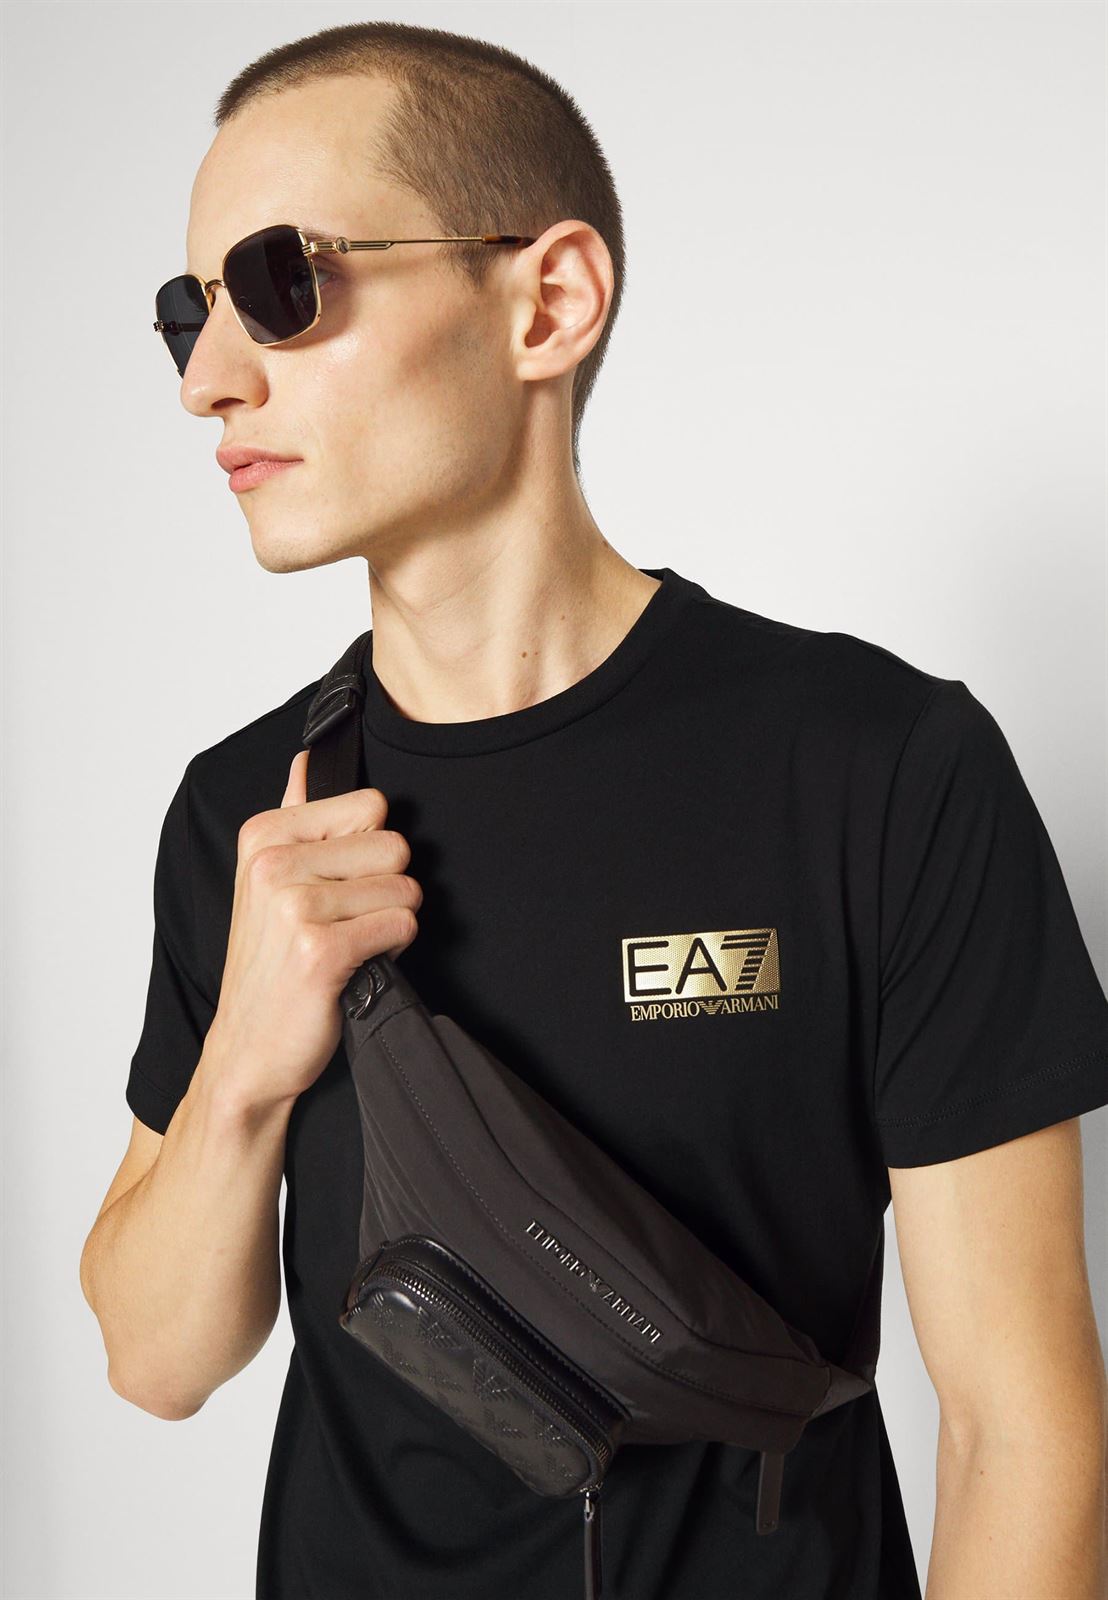 Camiseta EA7 Emporio Armani 6LPT11 PJM9Z 1200 negro/dorado - Imagen 4